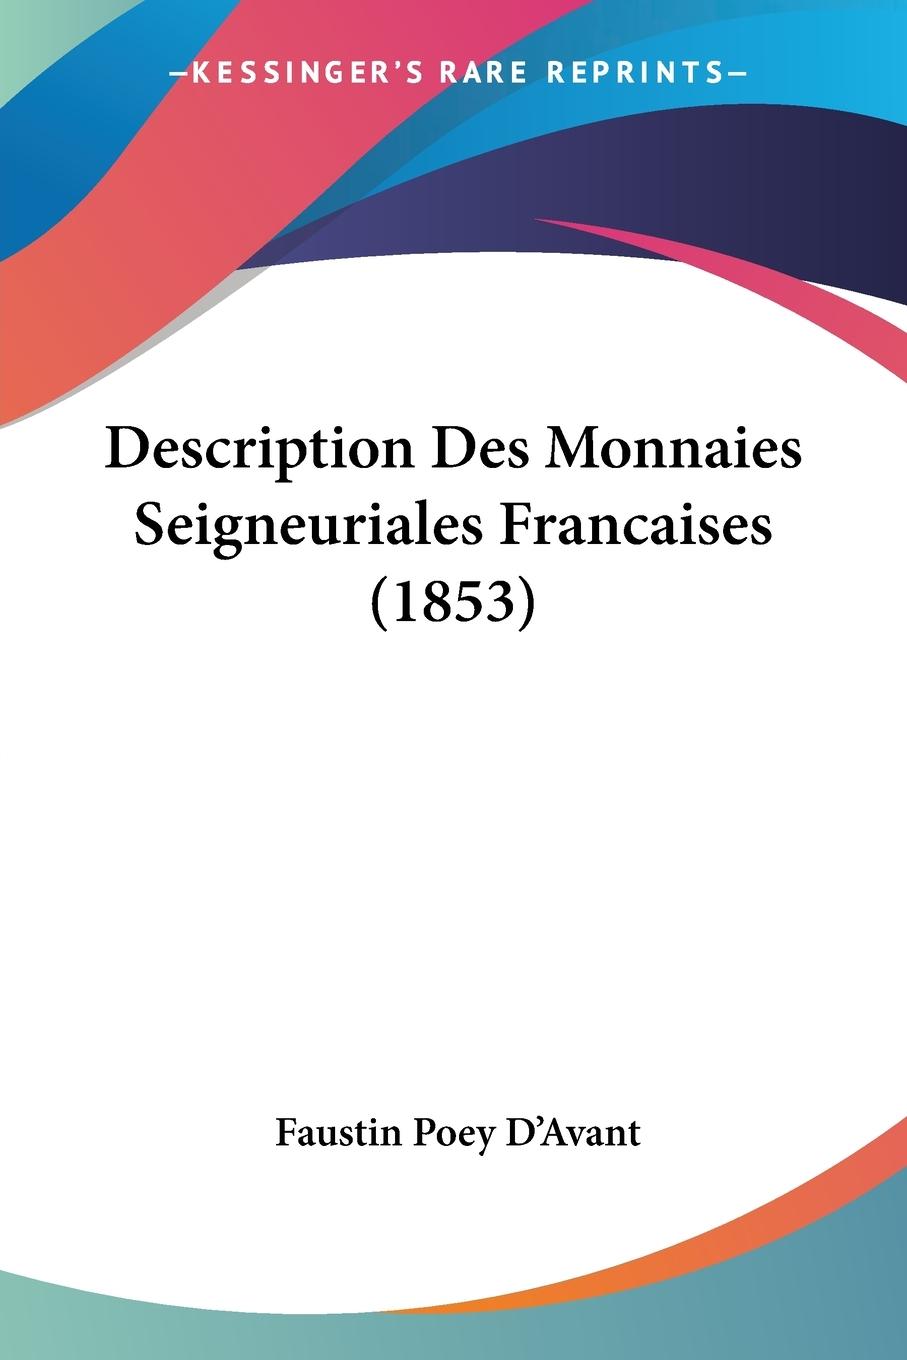 Description Des Monnaies Seigneuriales Francaises (1853) - D Avant, Faustin Poey